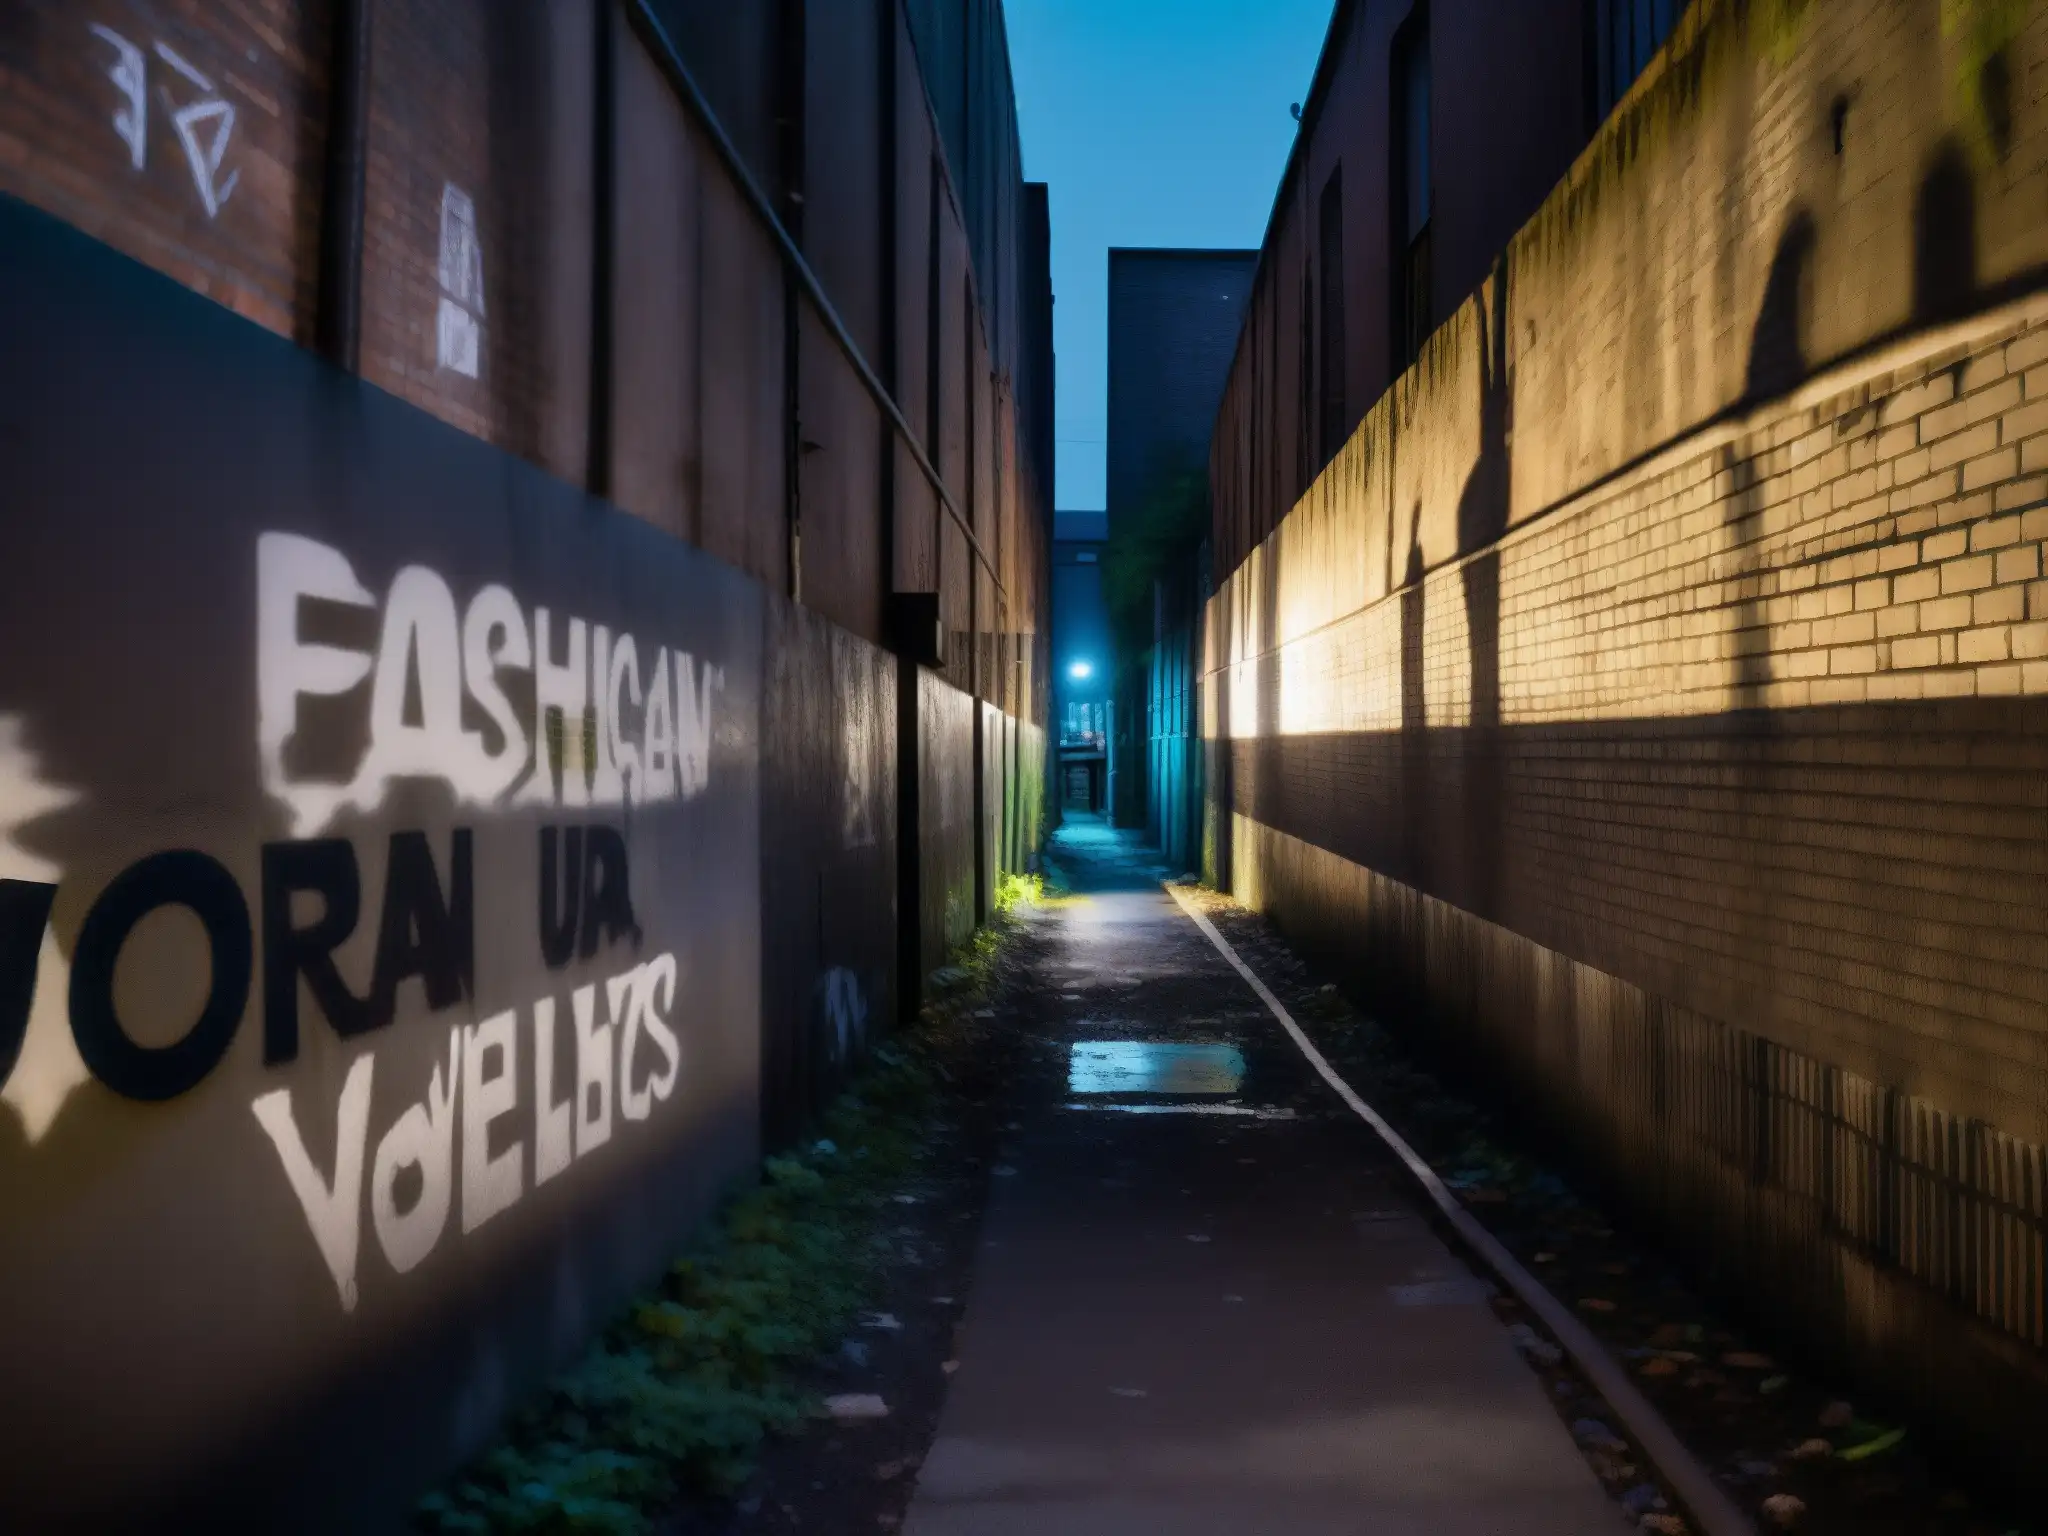 Alley urbano con graffiti, luces parpadeantes y una figura solitaria, evocando el impacto psicológico de leyendas urbanas